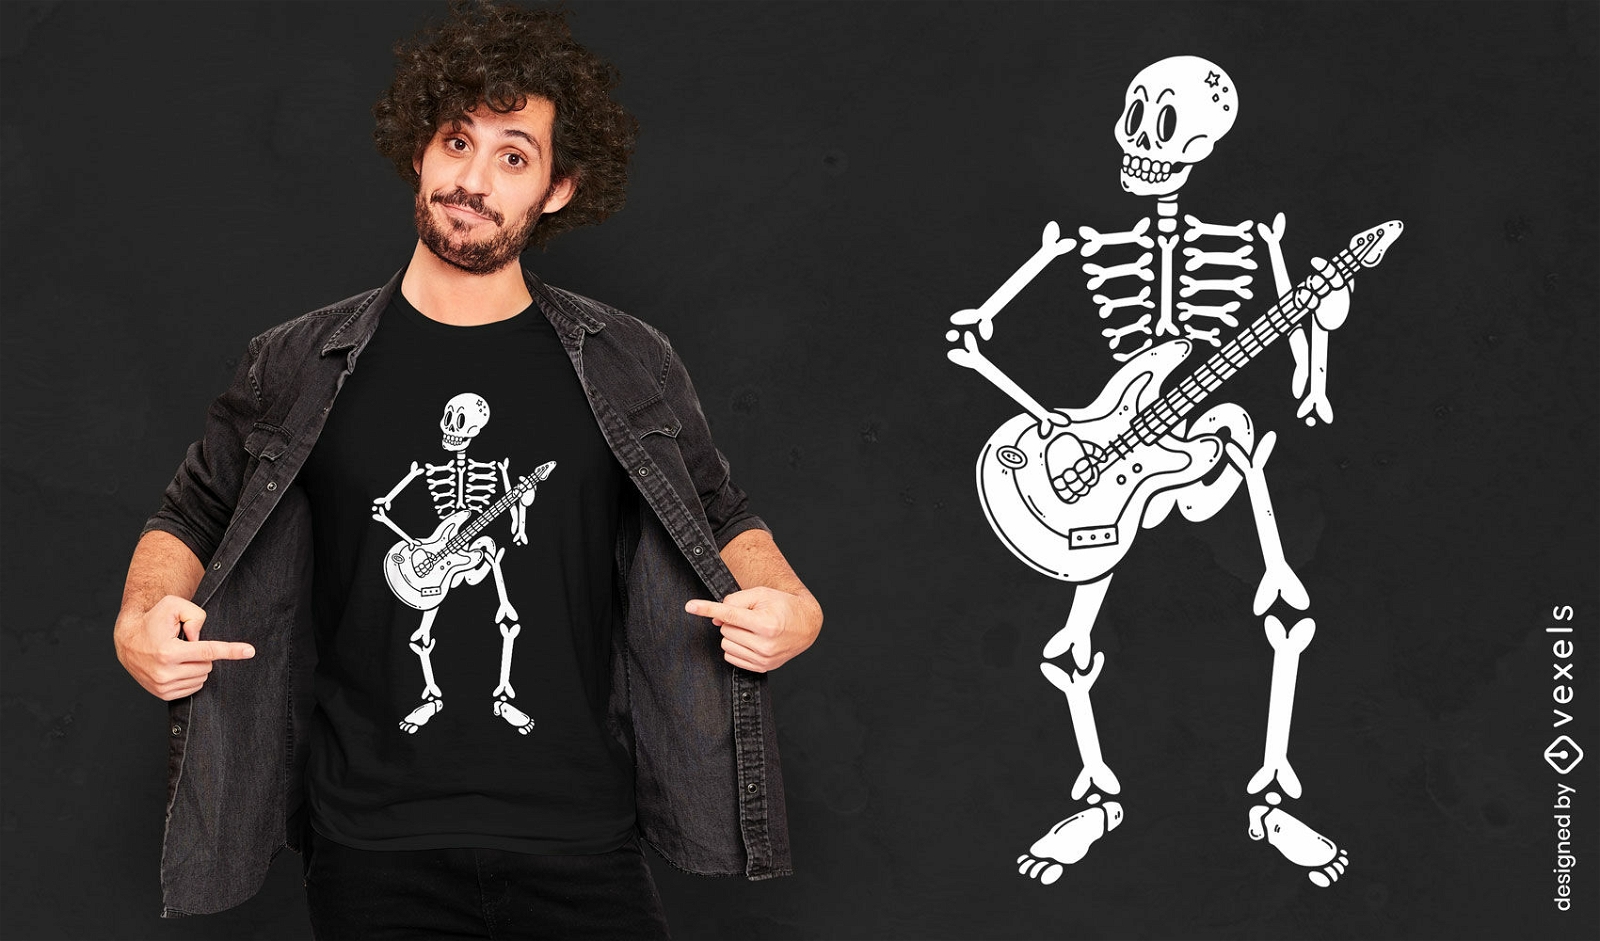 Skeleton playing electric guitar t-shirt design